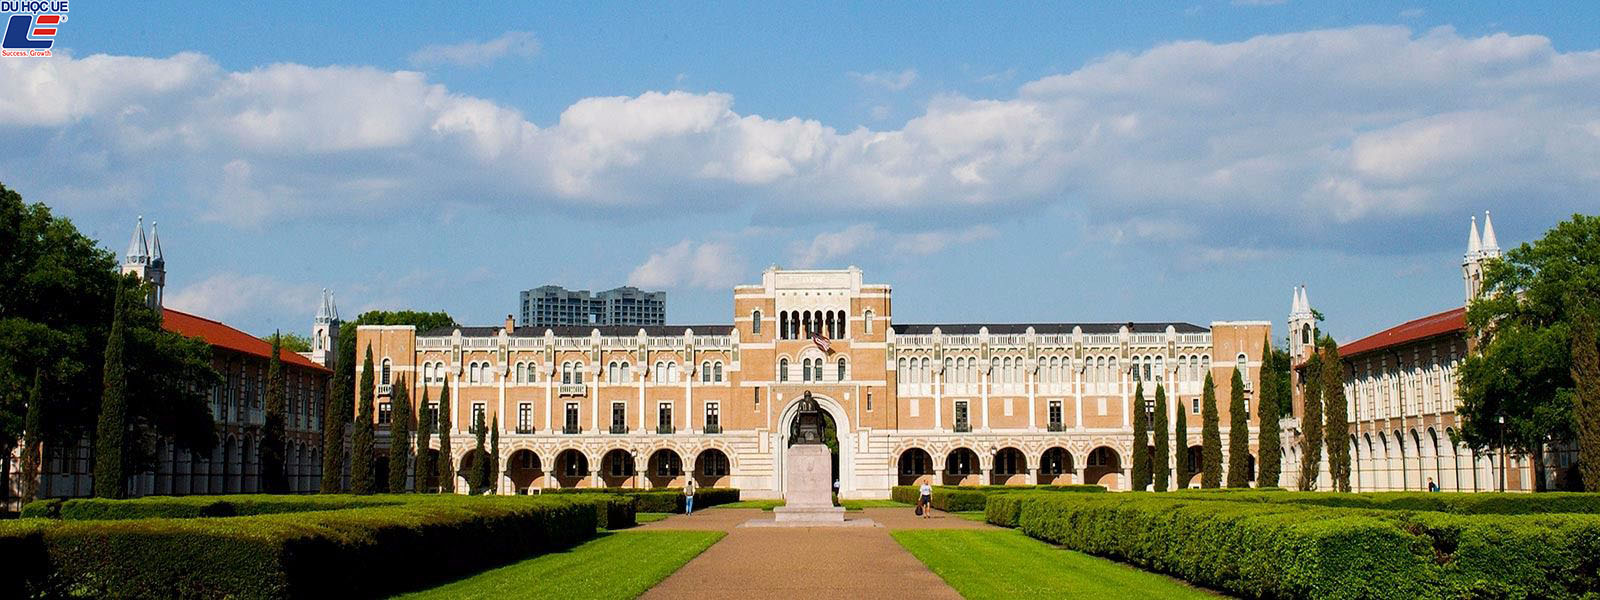 Hai trường đại học tốt nhất ở Texas năm 2019